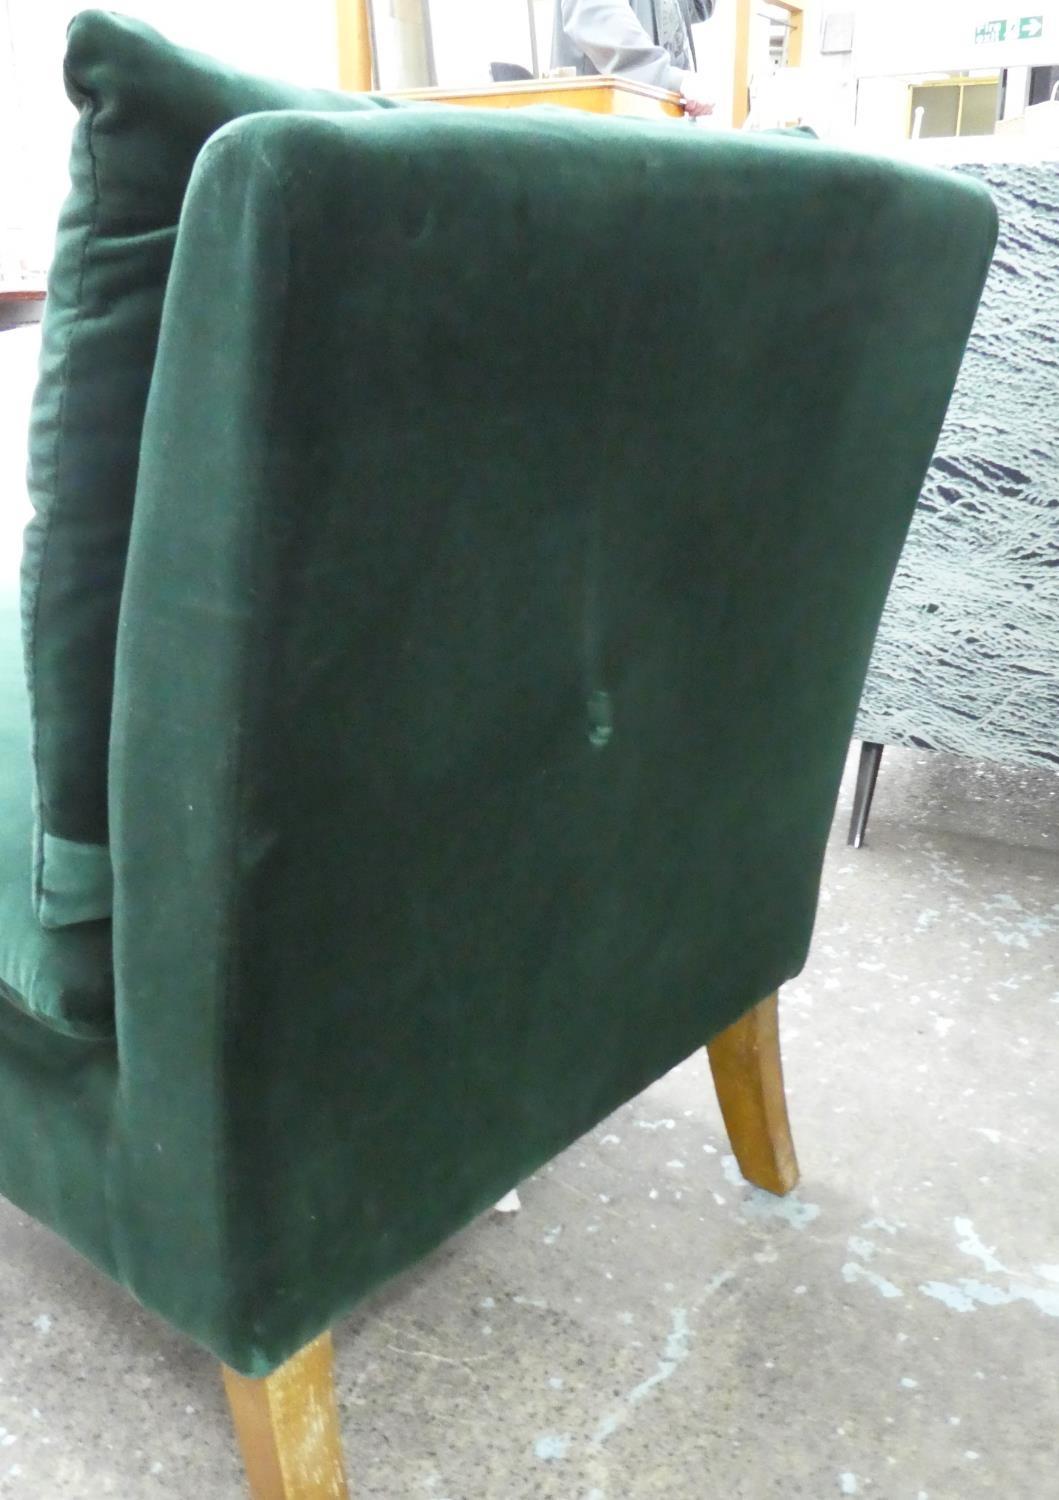 OKA SIDE CHAIR, 63cm x 84cm H, green velvet. - Image 4 of 5